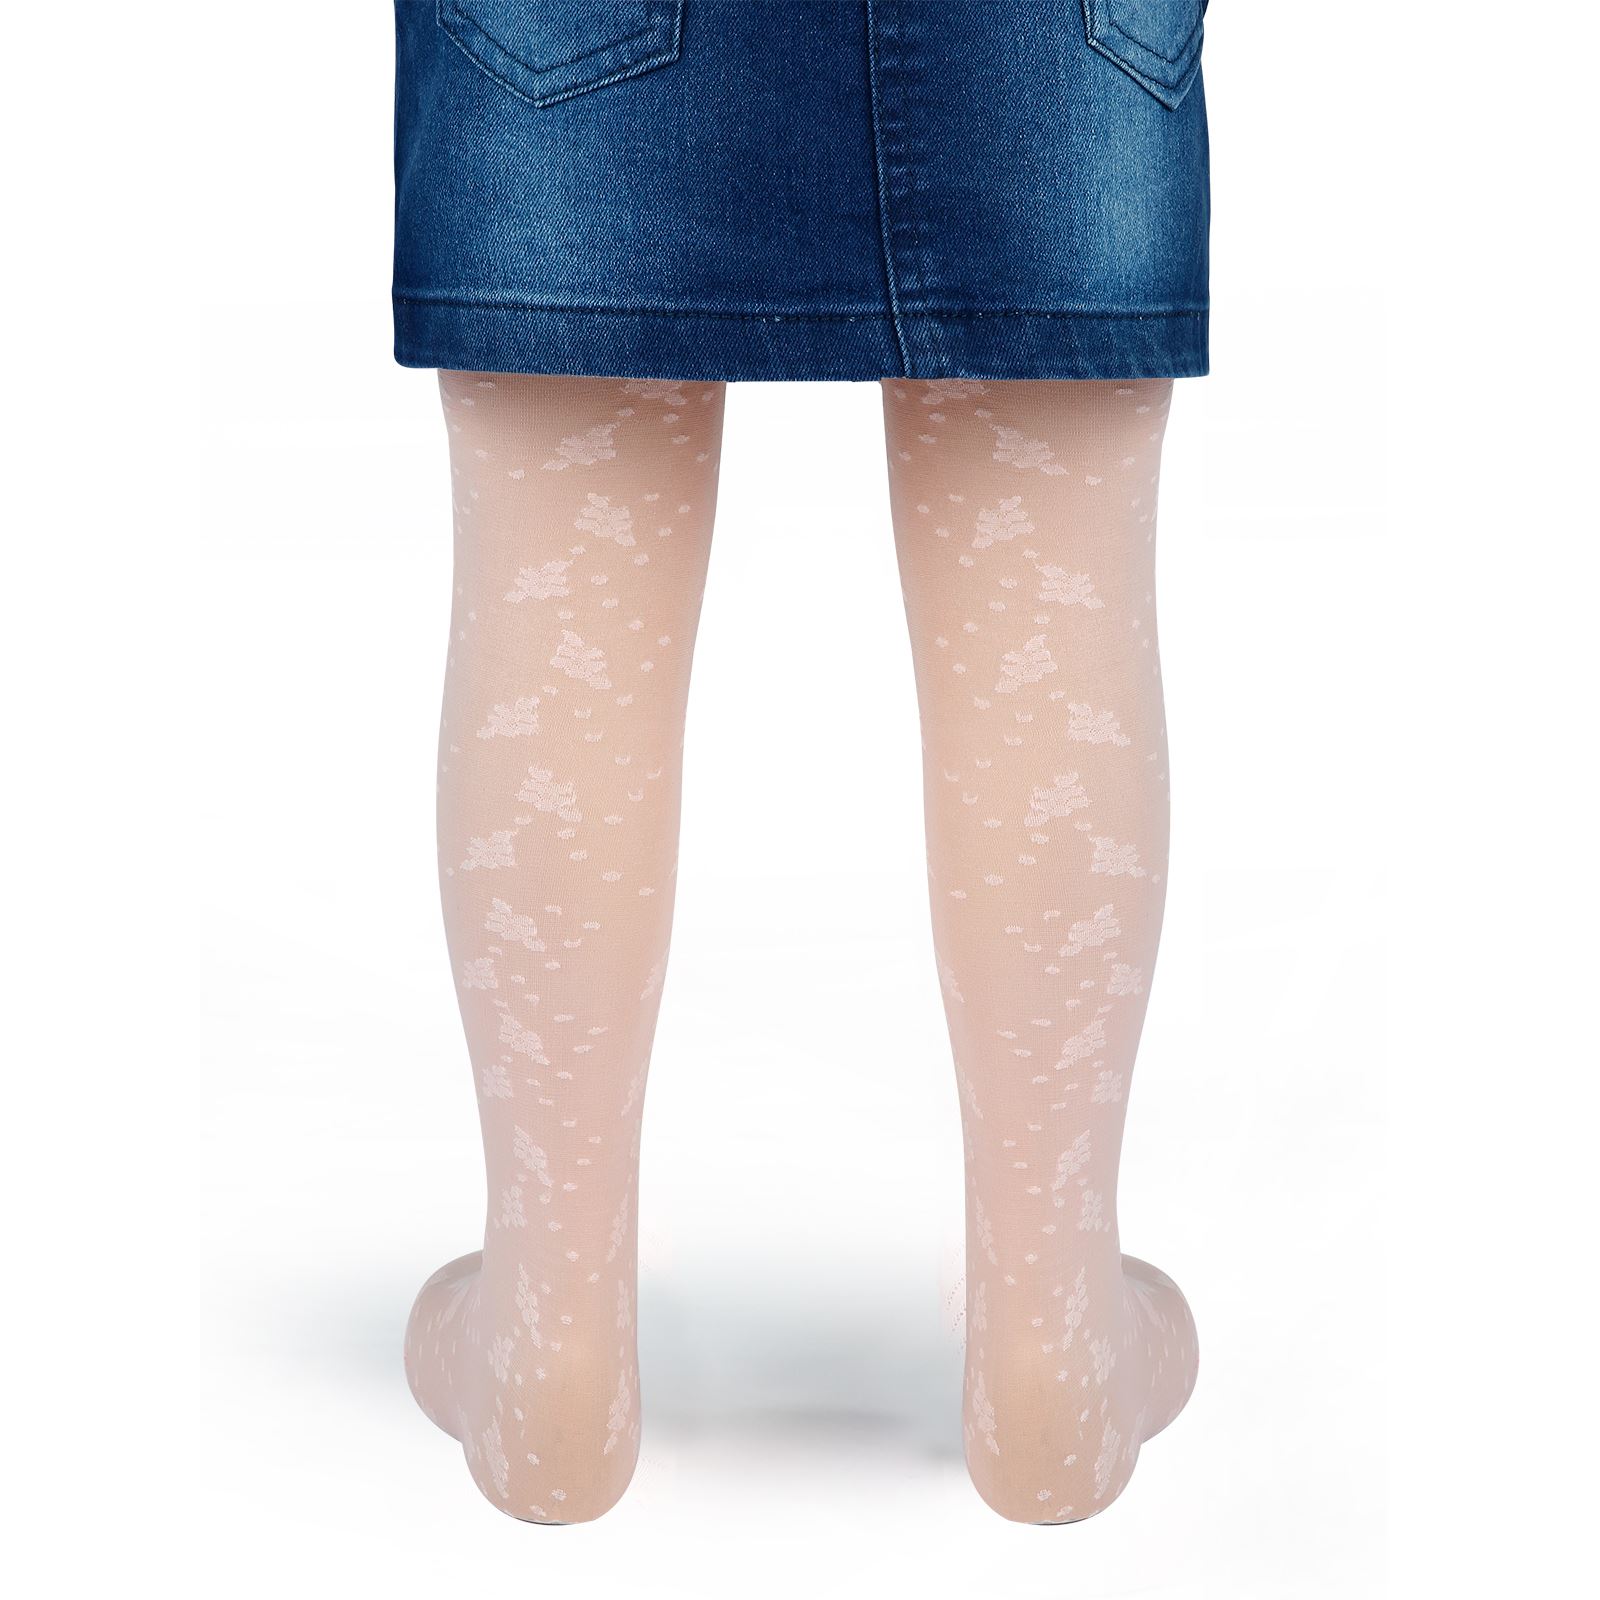 Bella Calze Kız Çocuk Külotlu Çorap 2-11 Yaş Pudra Pembe